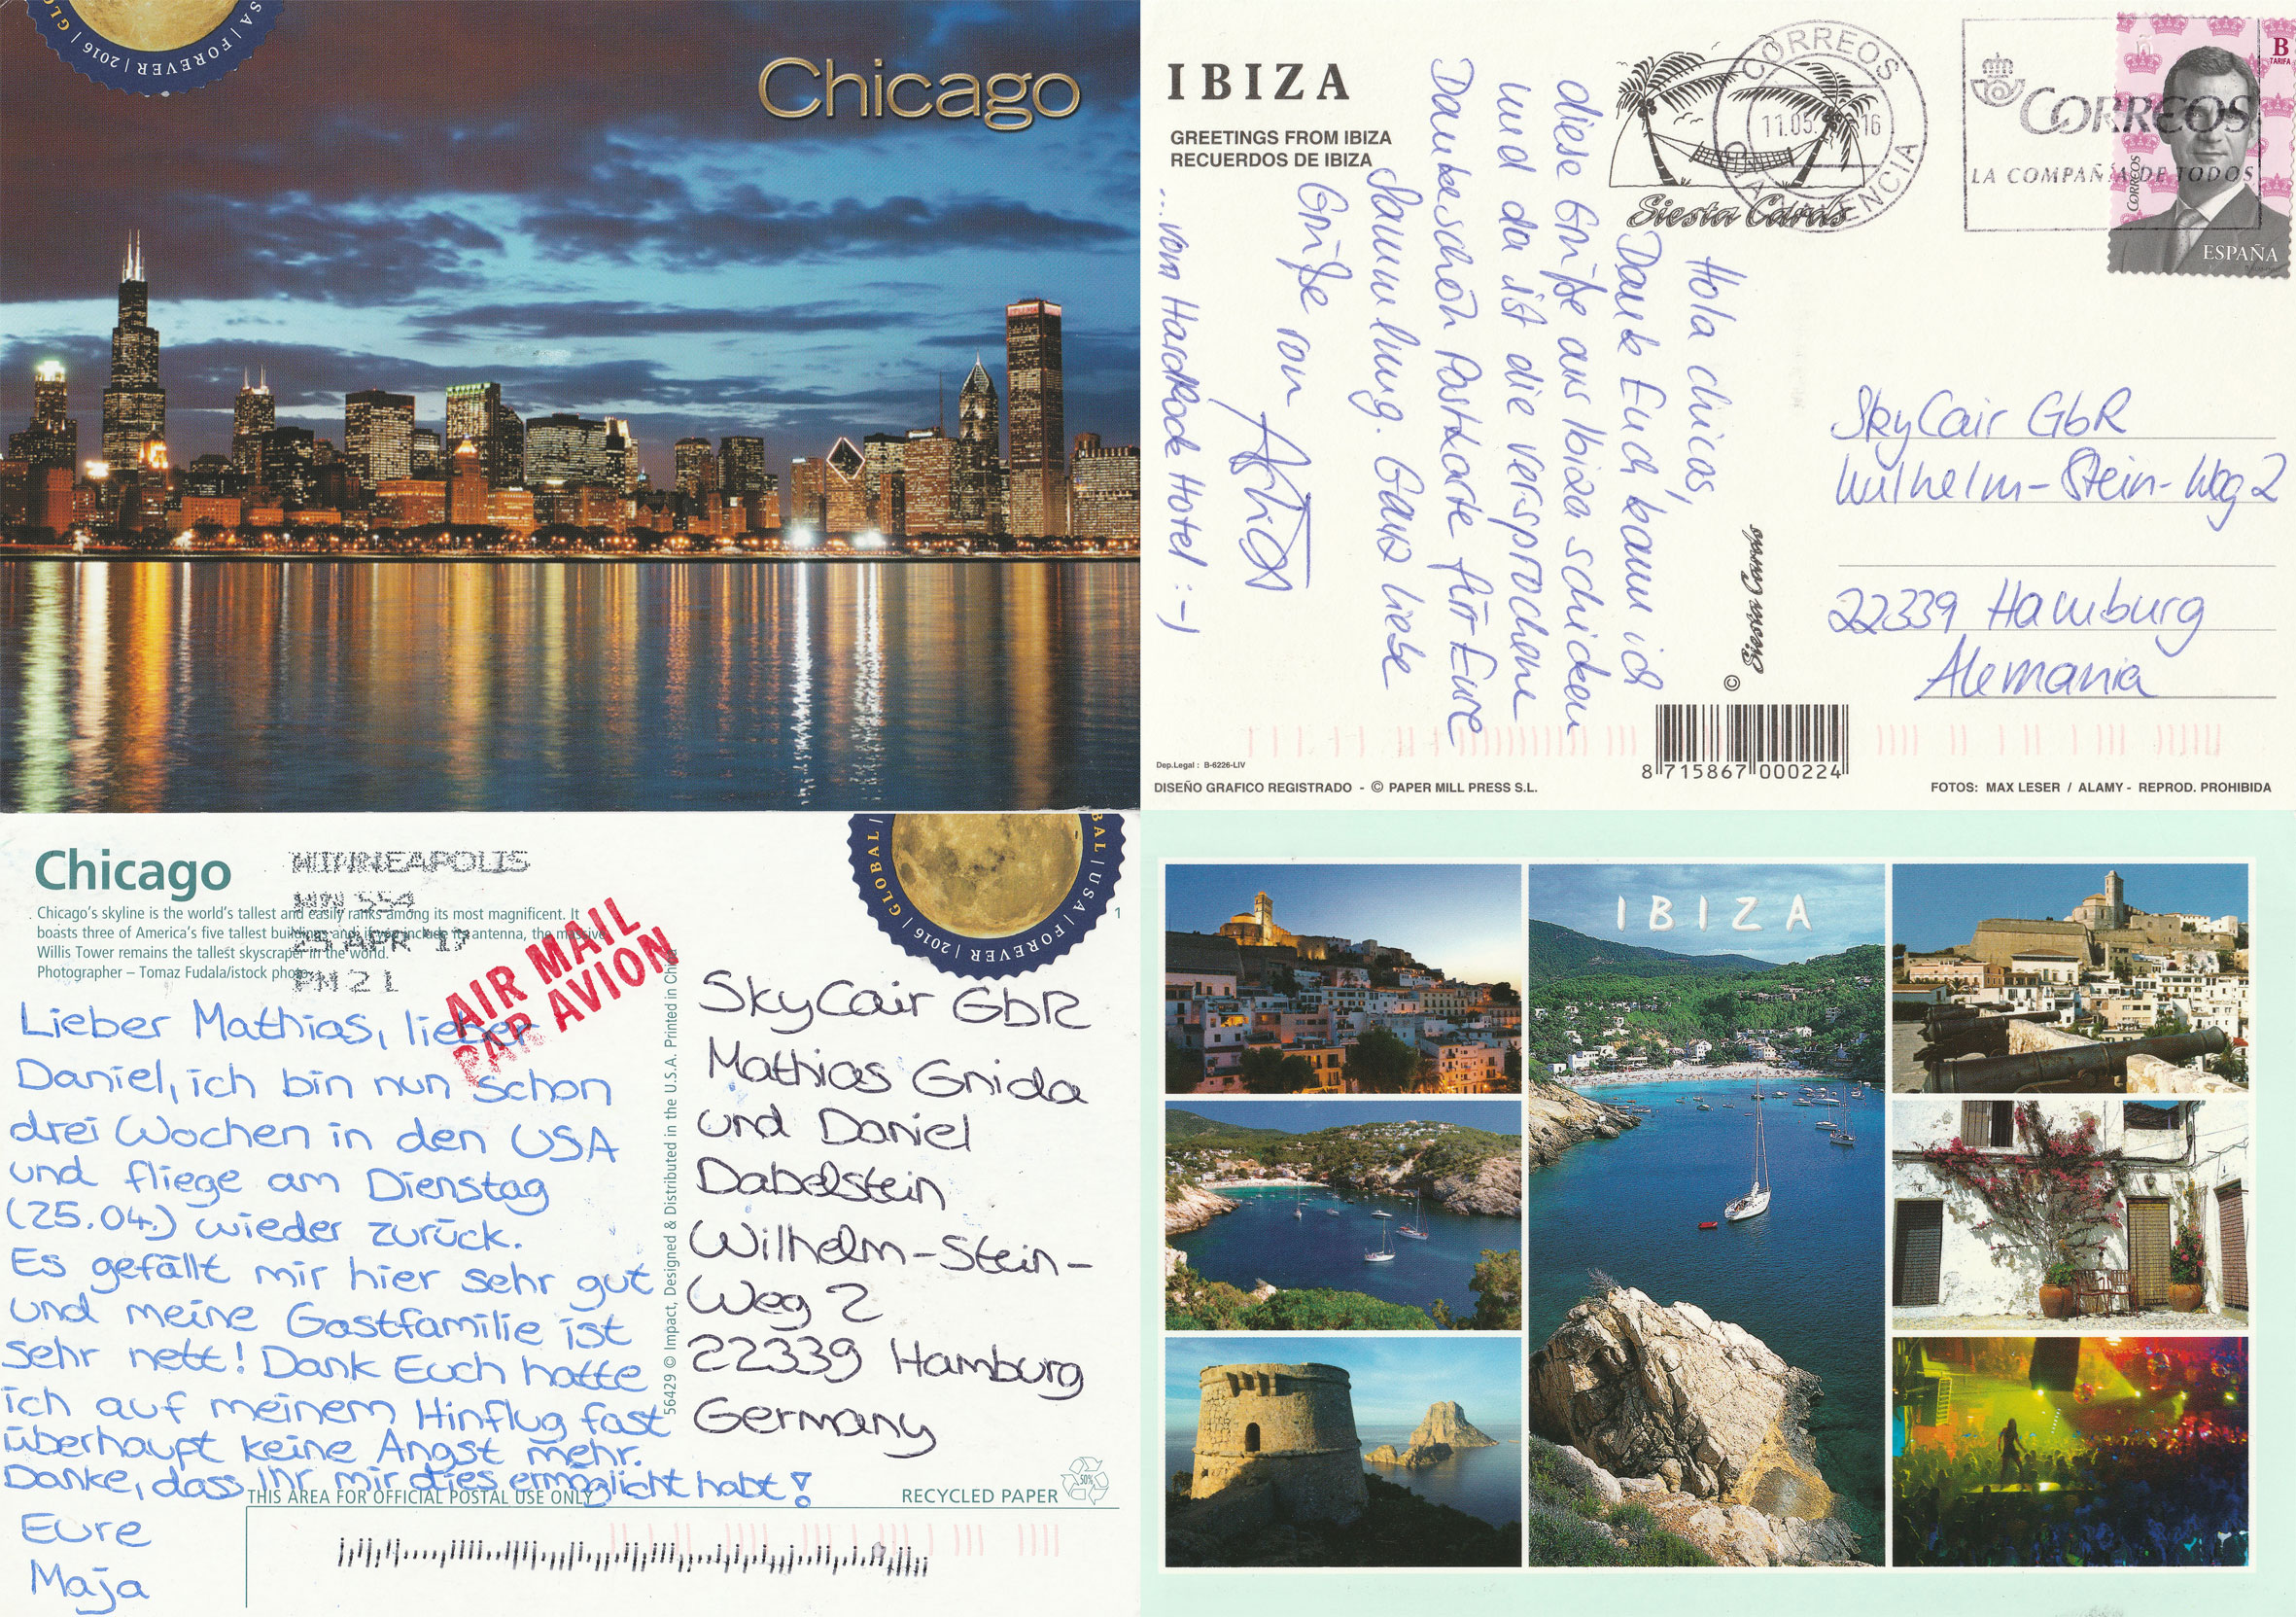 Postkartenbilder aus Chicago und Ibiza